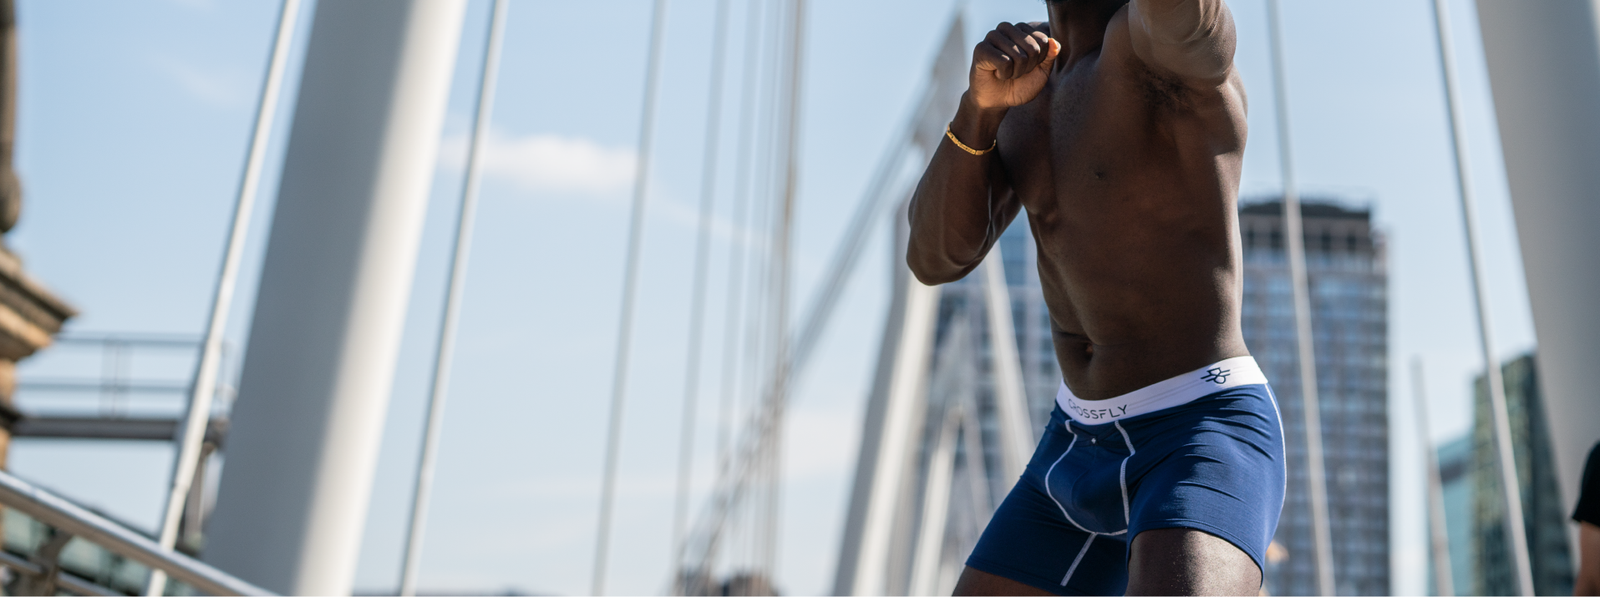 The 16 Best Men's Underwear of 2022 – Find the Best Briefs, Boxers